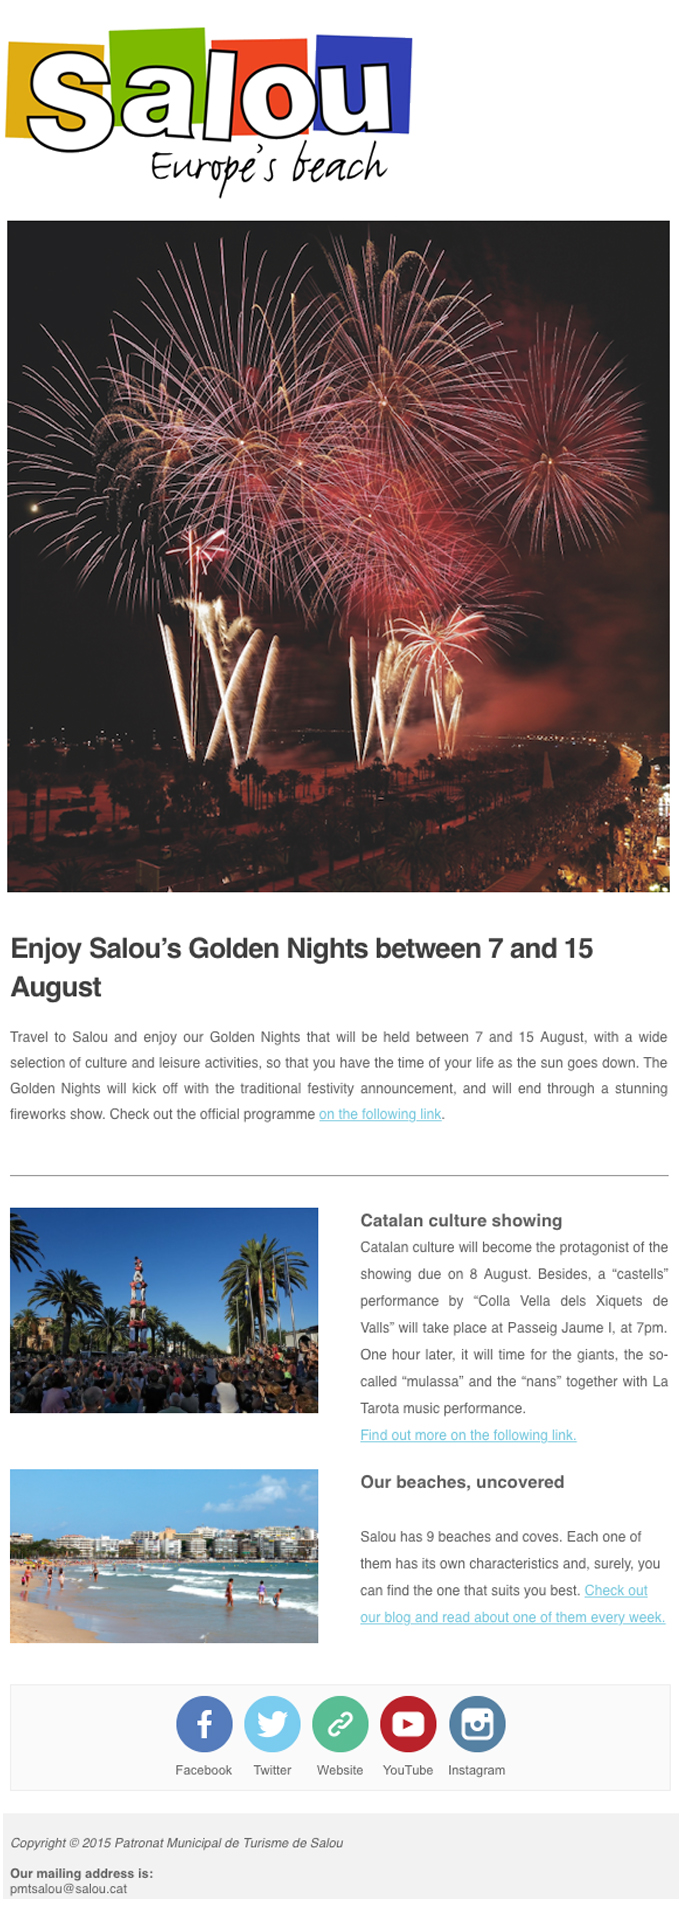 Enjoy Salou's Golden Nights between 7 and 15 August